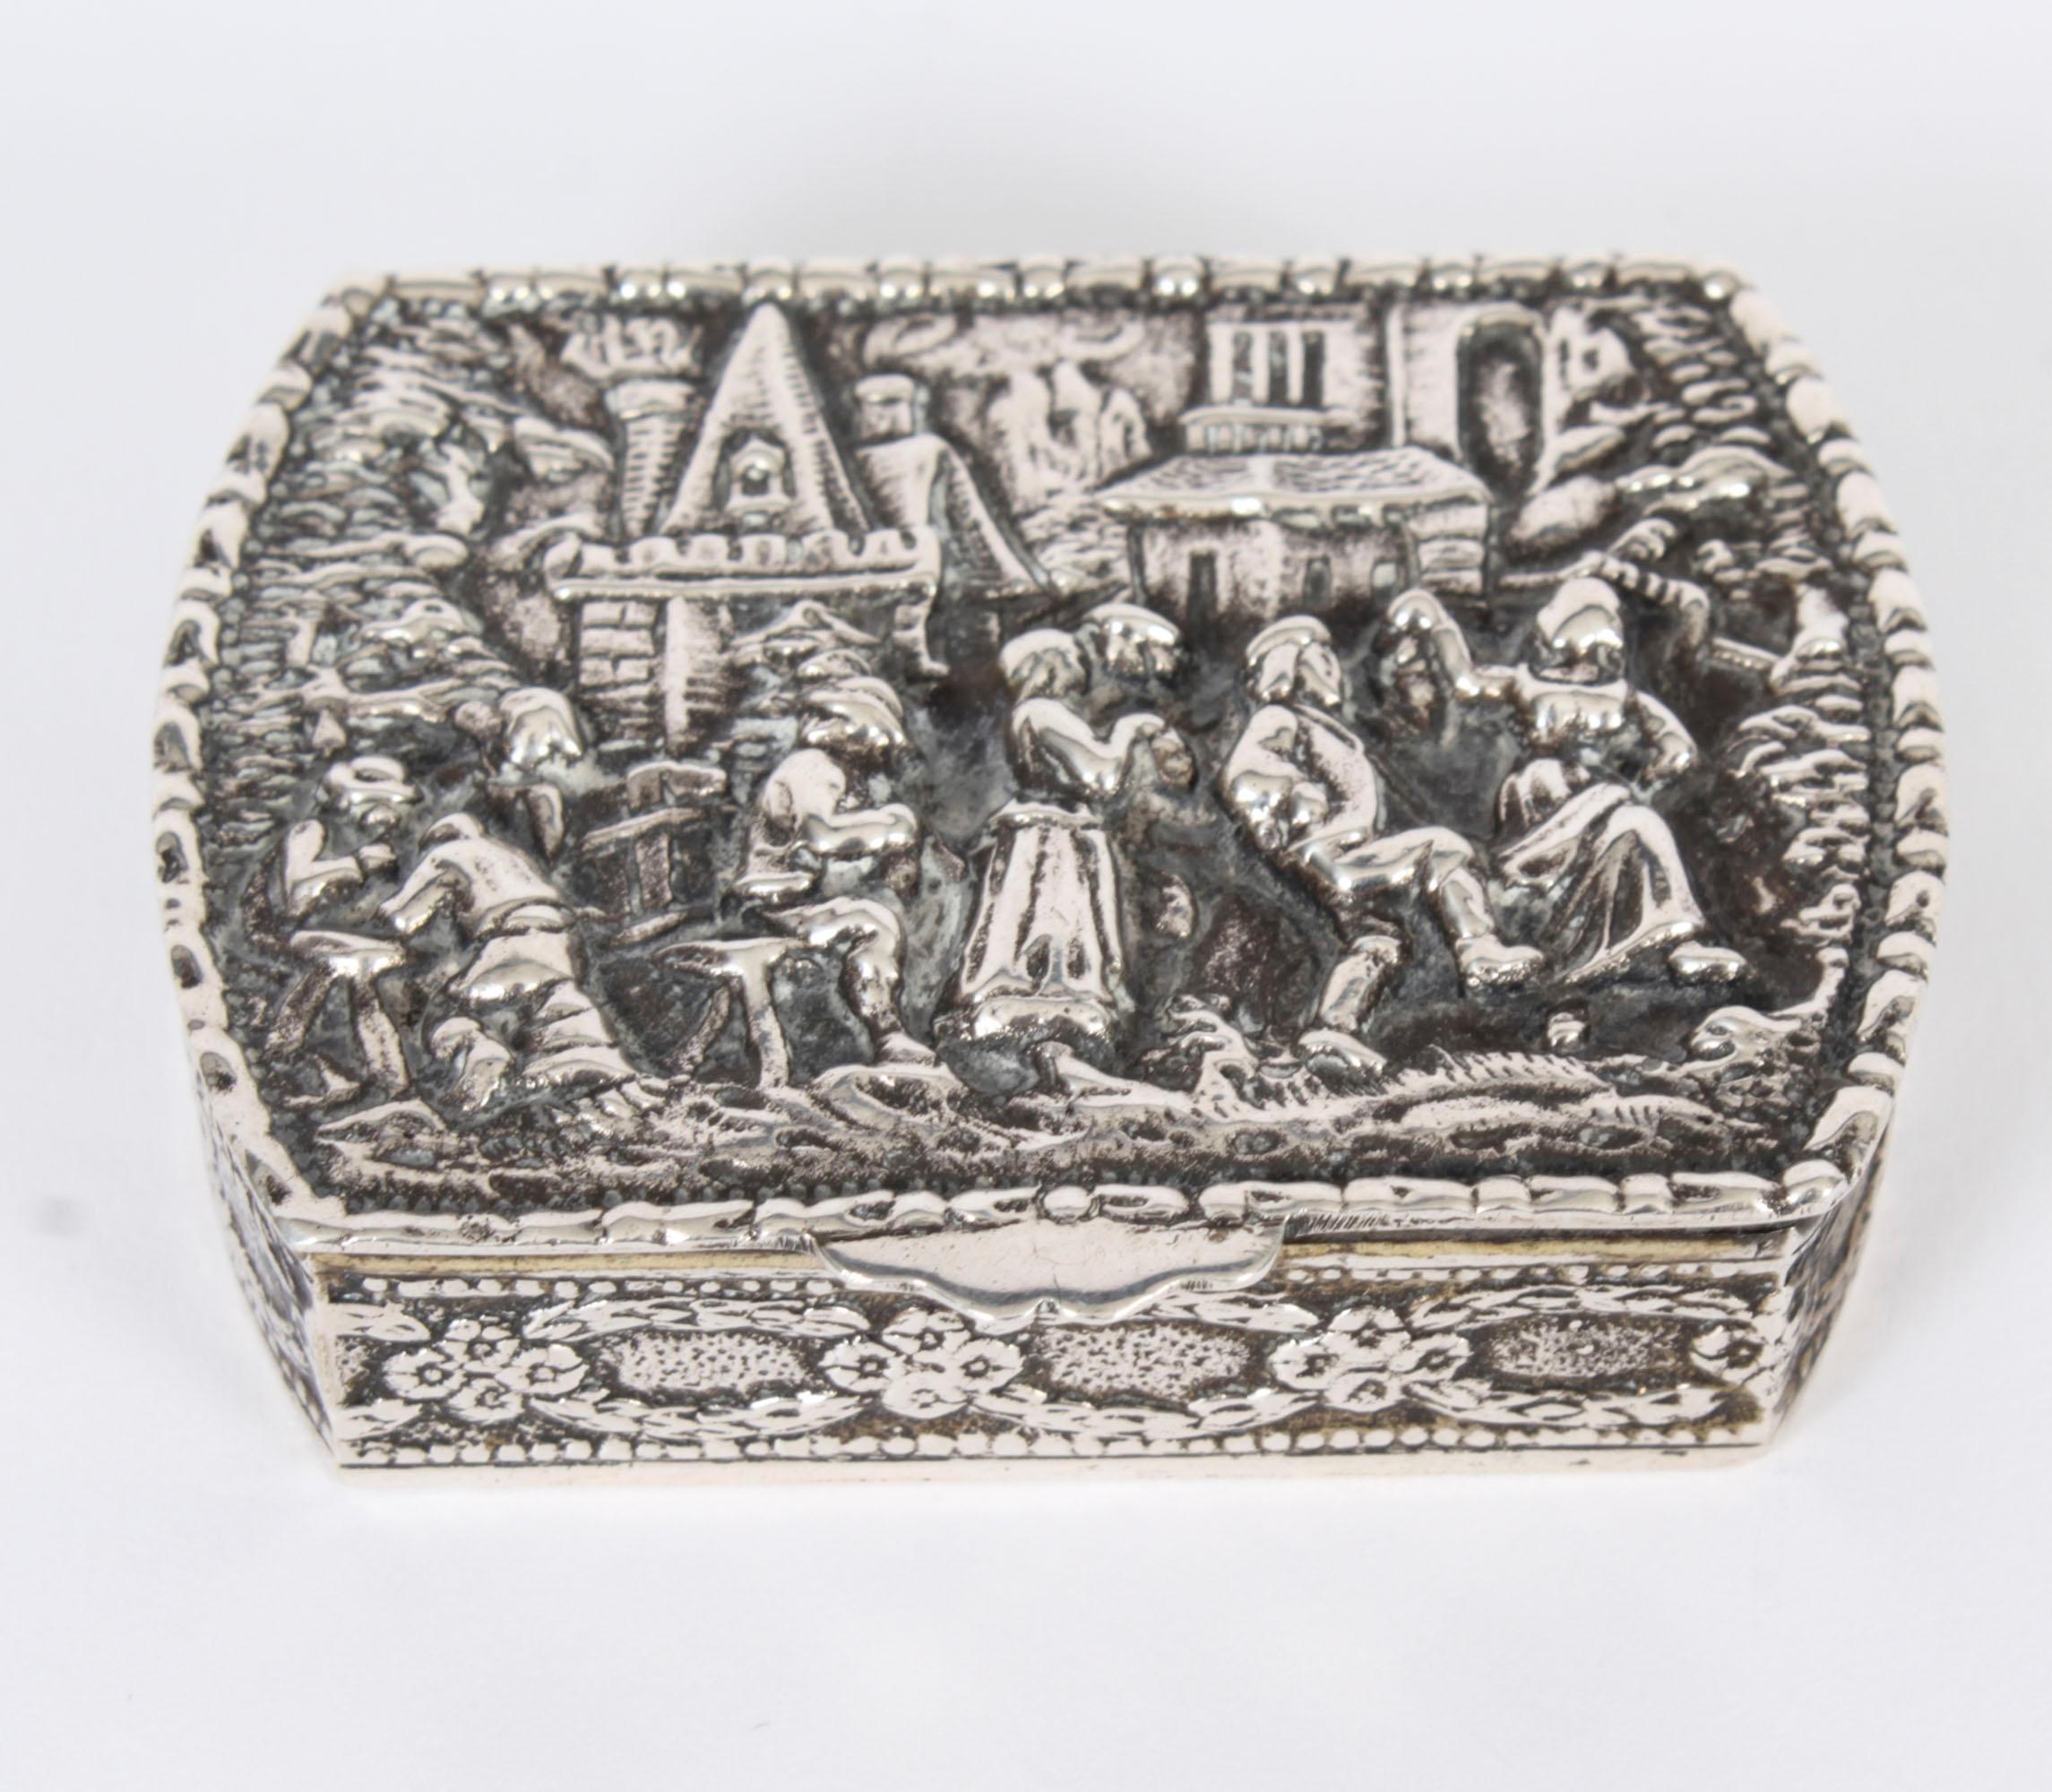 Il s'agit d'une magnifique boîte à pilules / tabatière ancienne en argent sterling espagnol,  portant l'étoile espagnole à 5 branches en argent avec marque de fabricant Ucc, Circa 1900 en date.

Il est décoré de scènes de boisson et de danse en